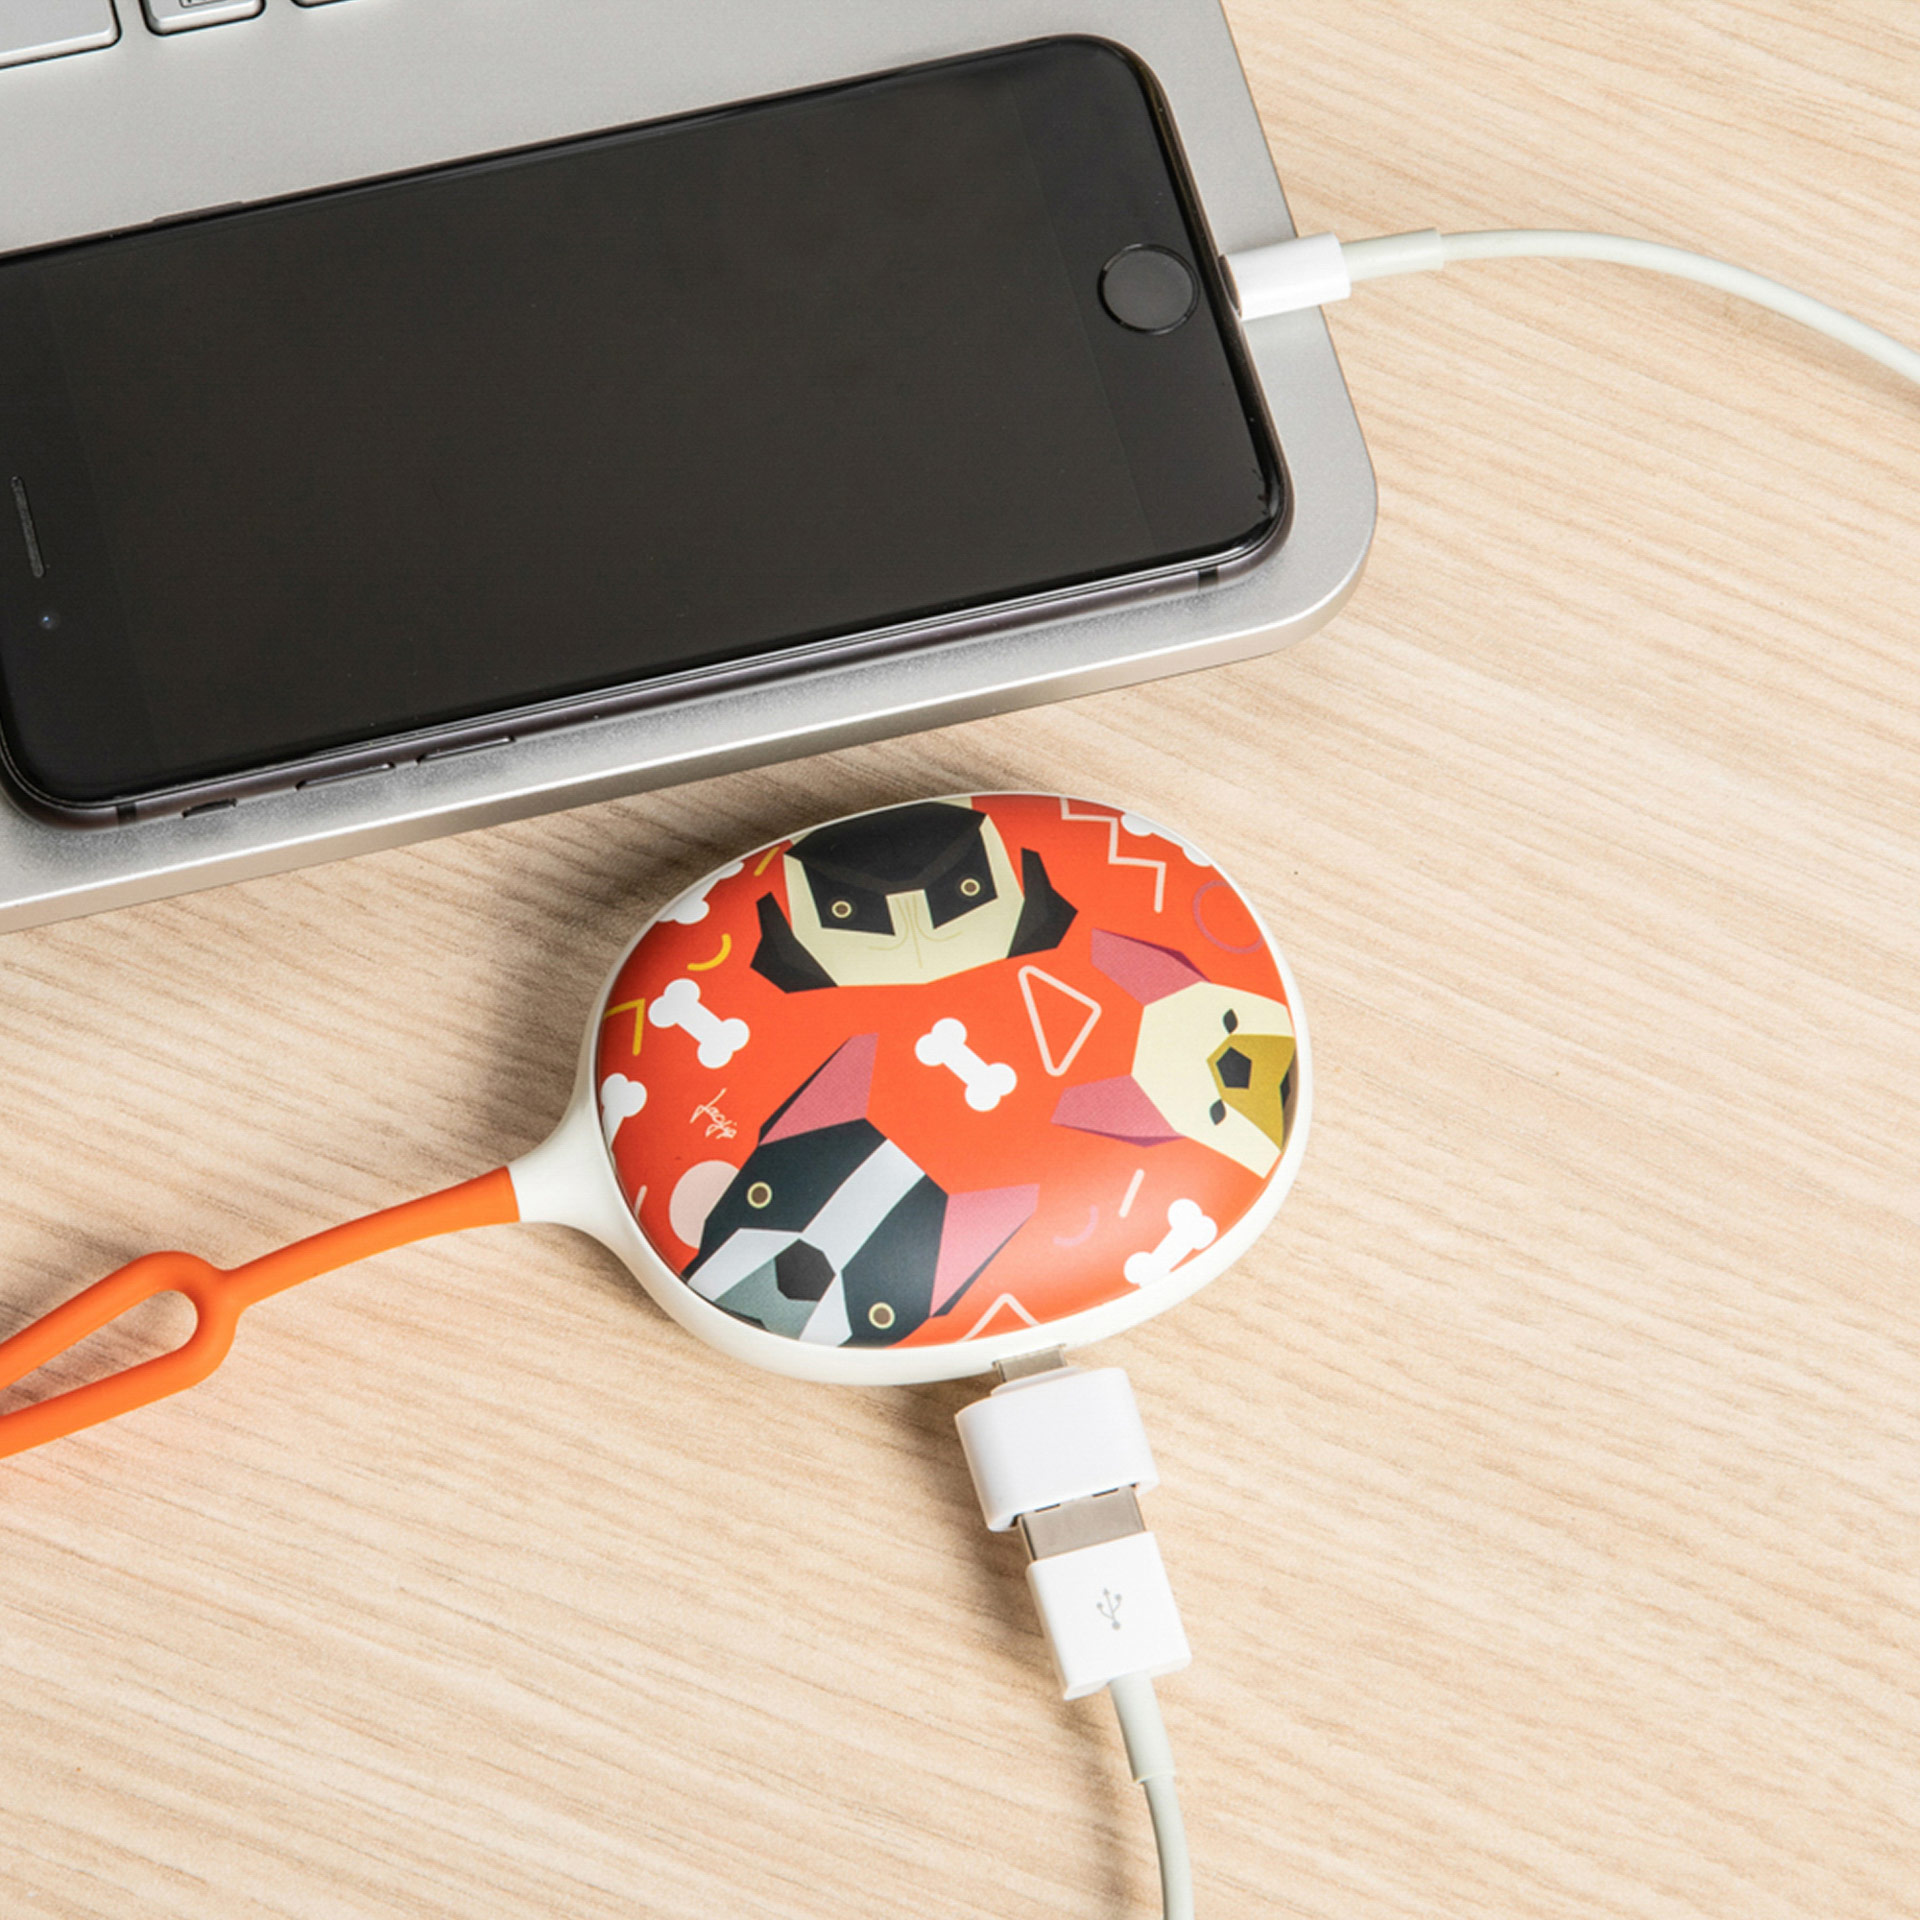 Nero Scaldamani Elettrico USB Portatile Power Bank per Uomini e Donne in Inverno Freddo Uiter Scaldamani Ricaricabile 5200mAh 